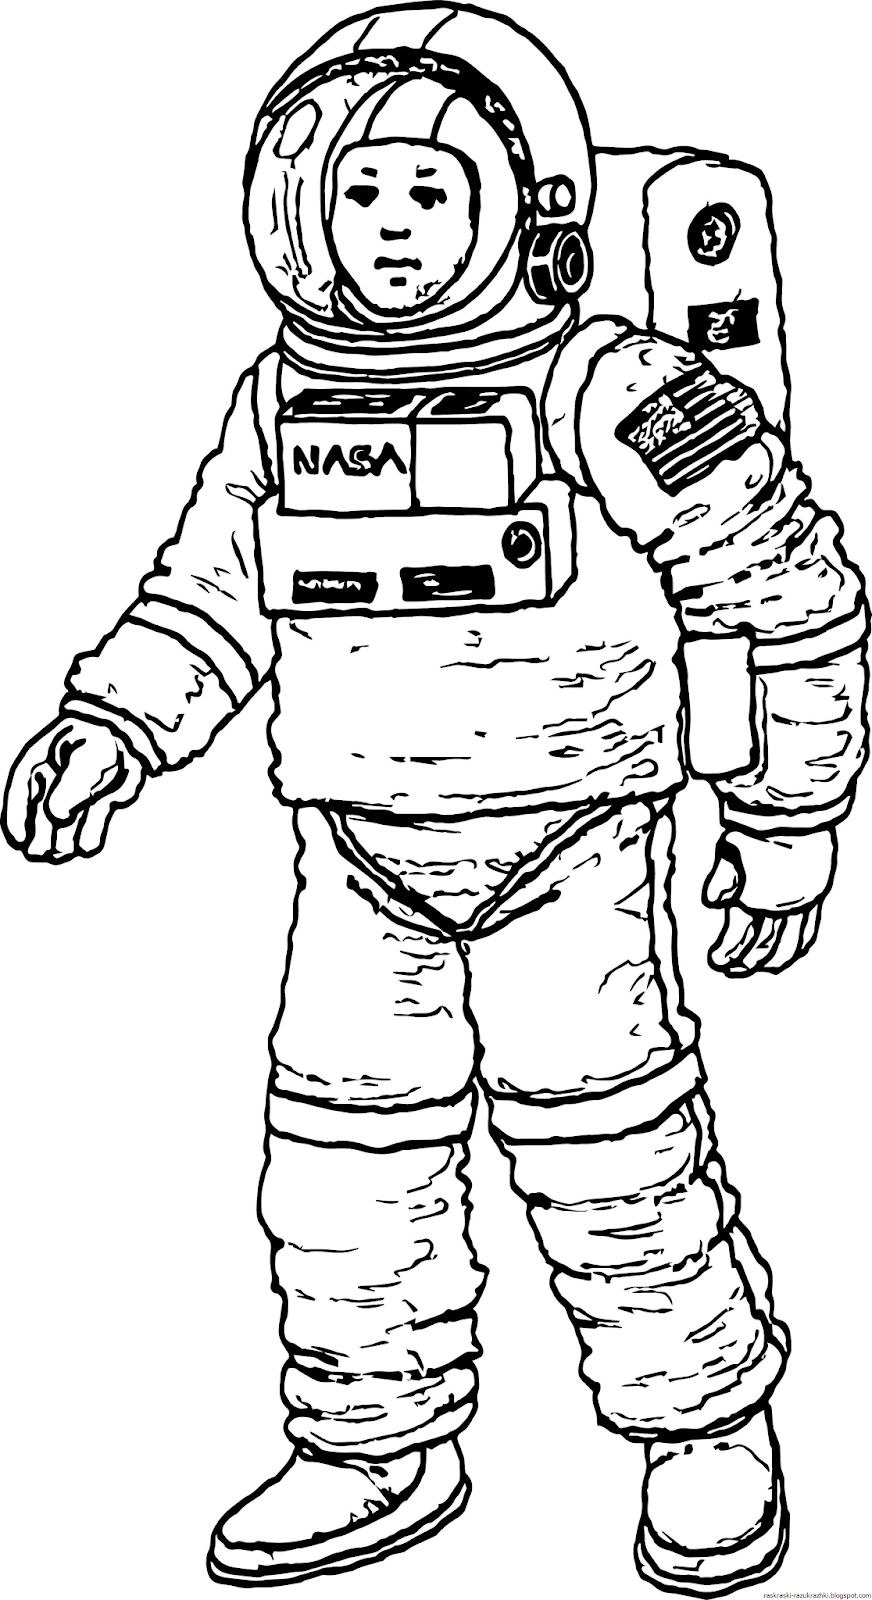 Как разукрасить космонавта. Космонавт раскраска для детей. Раскраска про космос и Космонавтов для детей. Космонавт рисунок. Рисунок Космонавта в скафандре для детей.